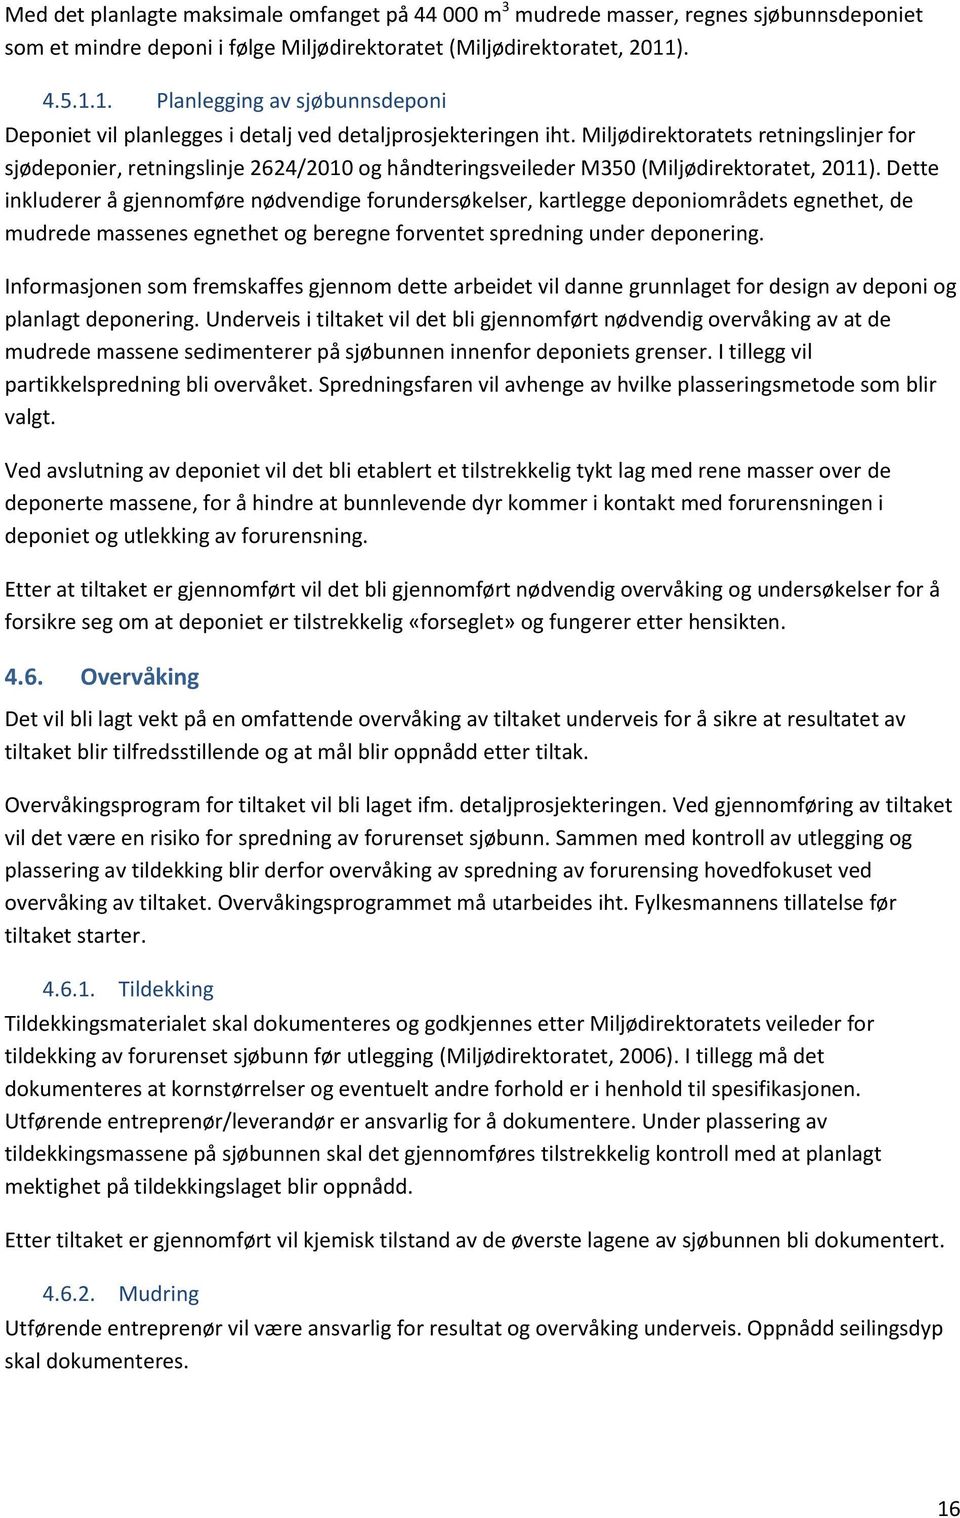 Miljødirektoratets retningslinjer for sjødeponier, retningslinje 2624/2010 og håndteringsveileder M350 (Miljødirektoratet, 2011).